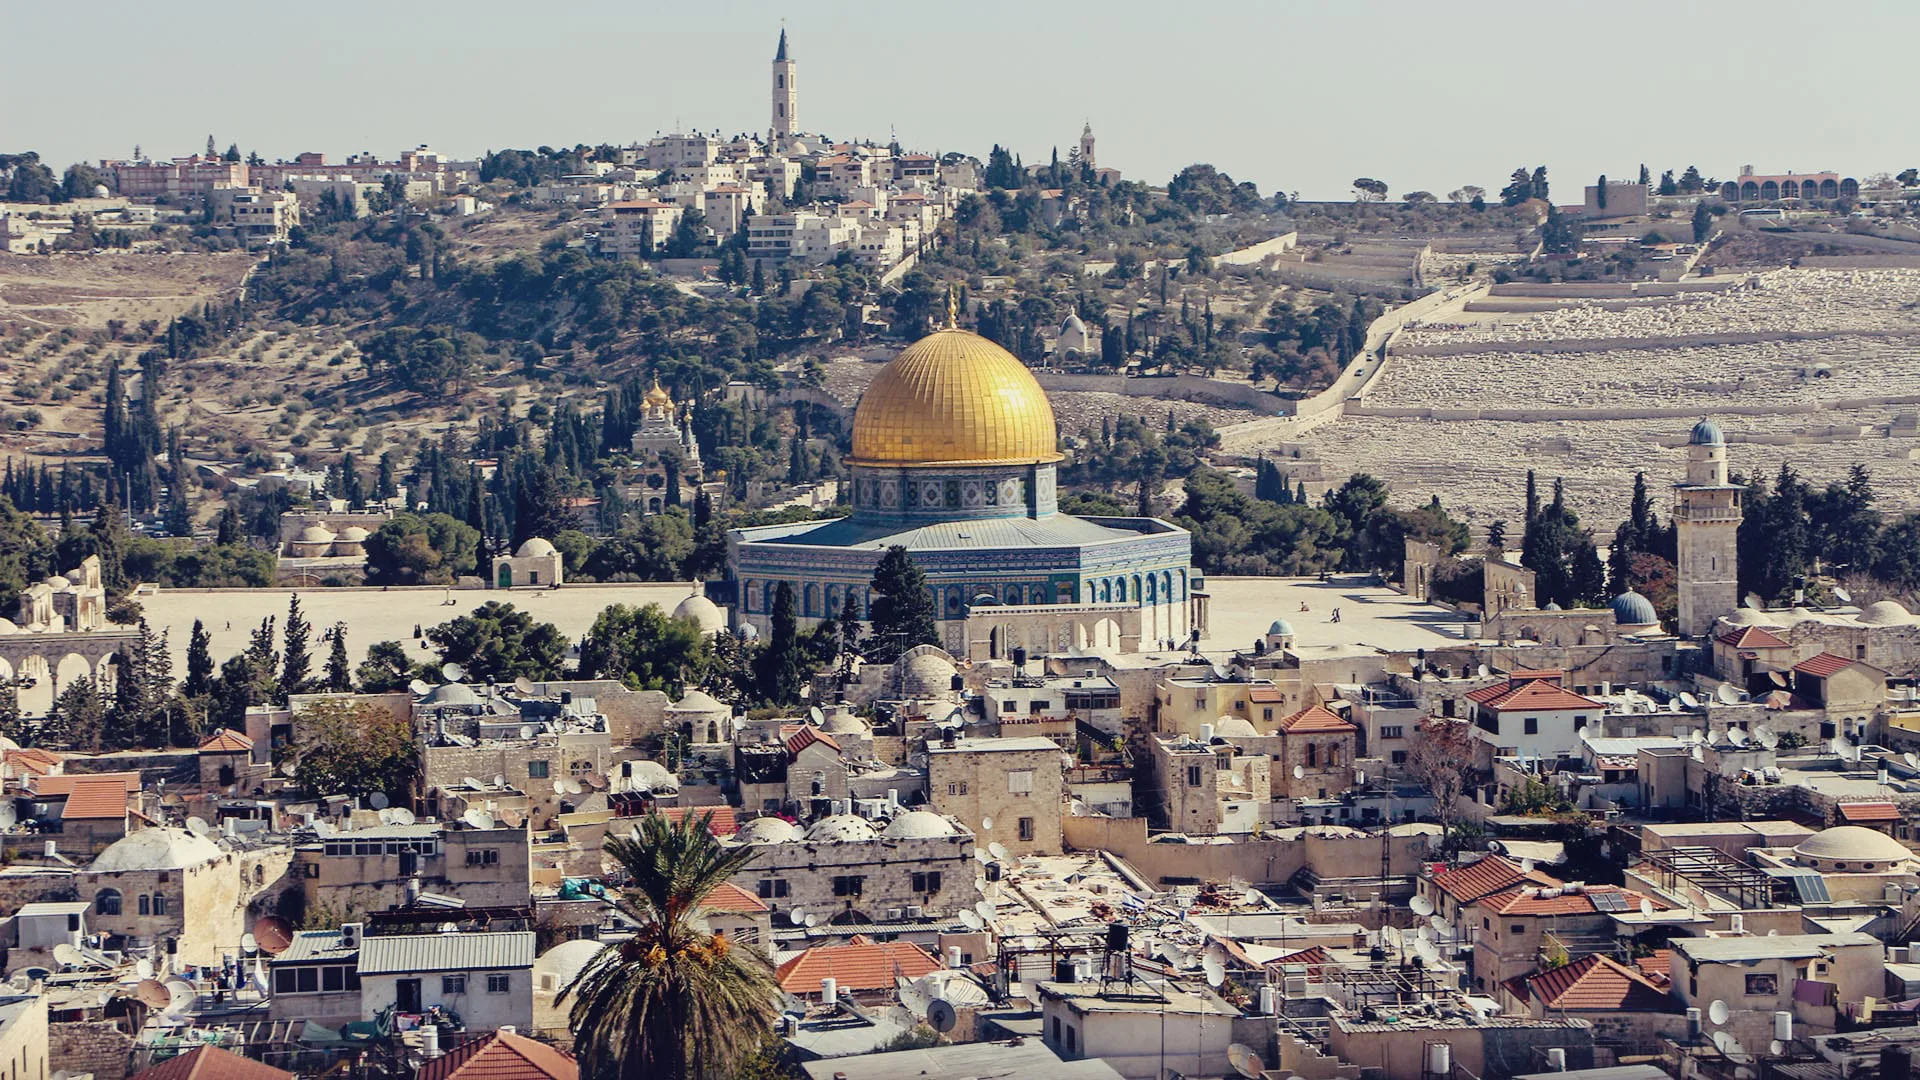 Sinagoga Hurva - História, horário e localização em Jerusalém